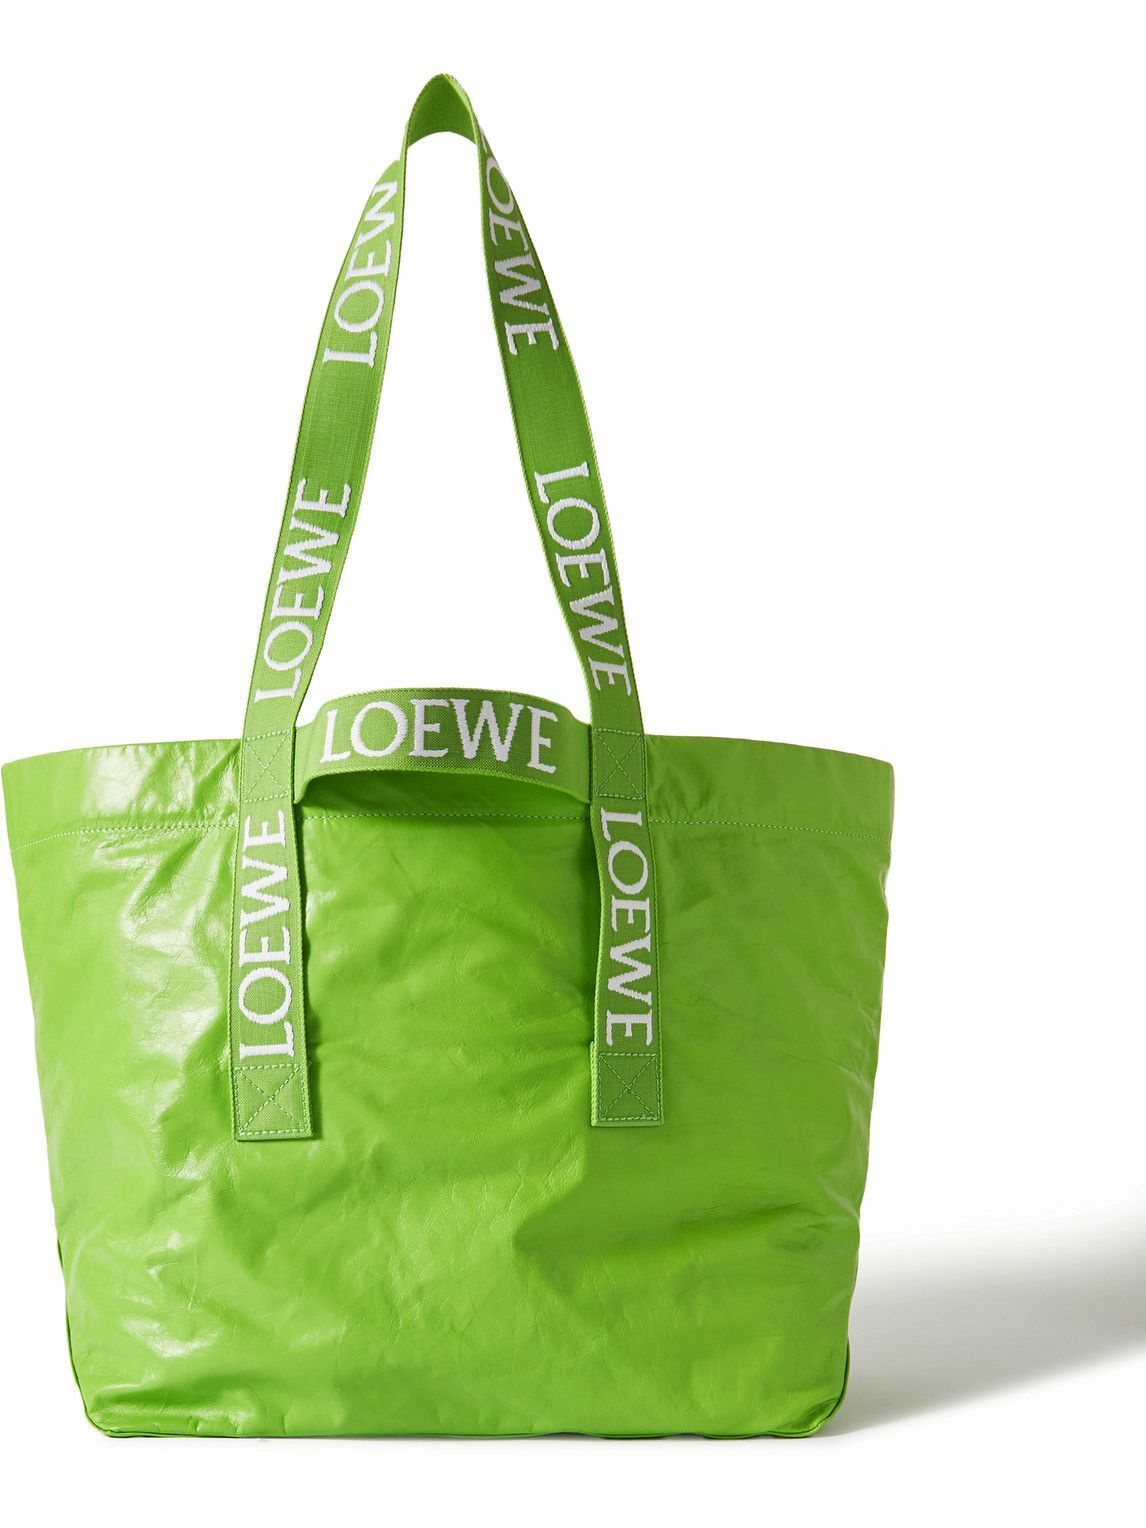 Loewe - Distressed Leather Tote Bag Loewe